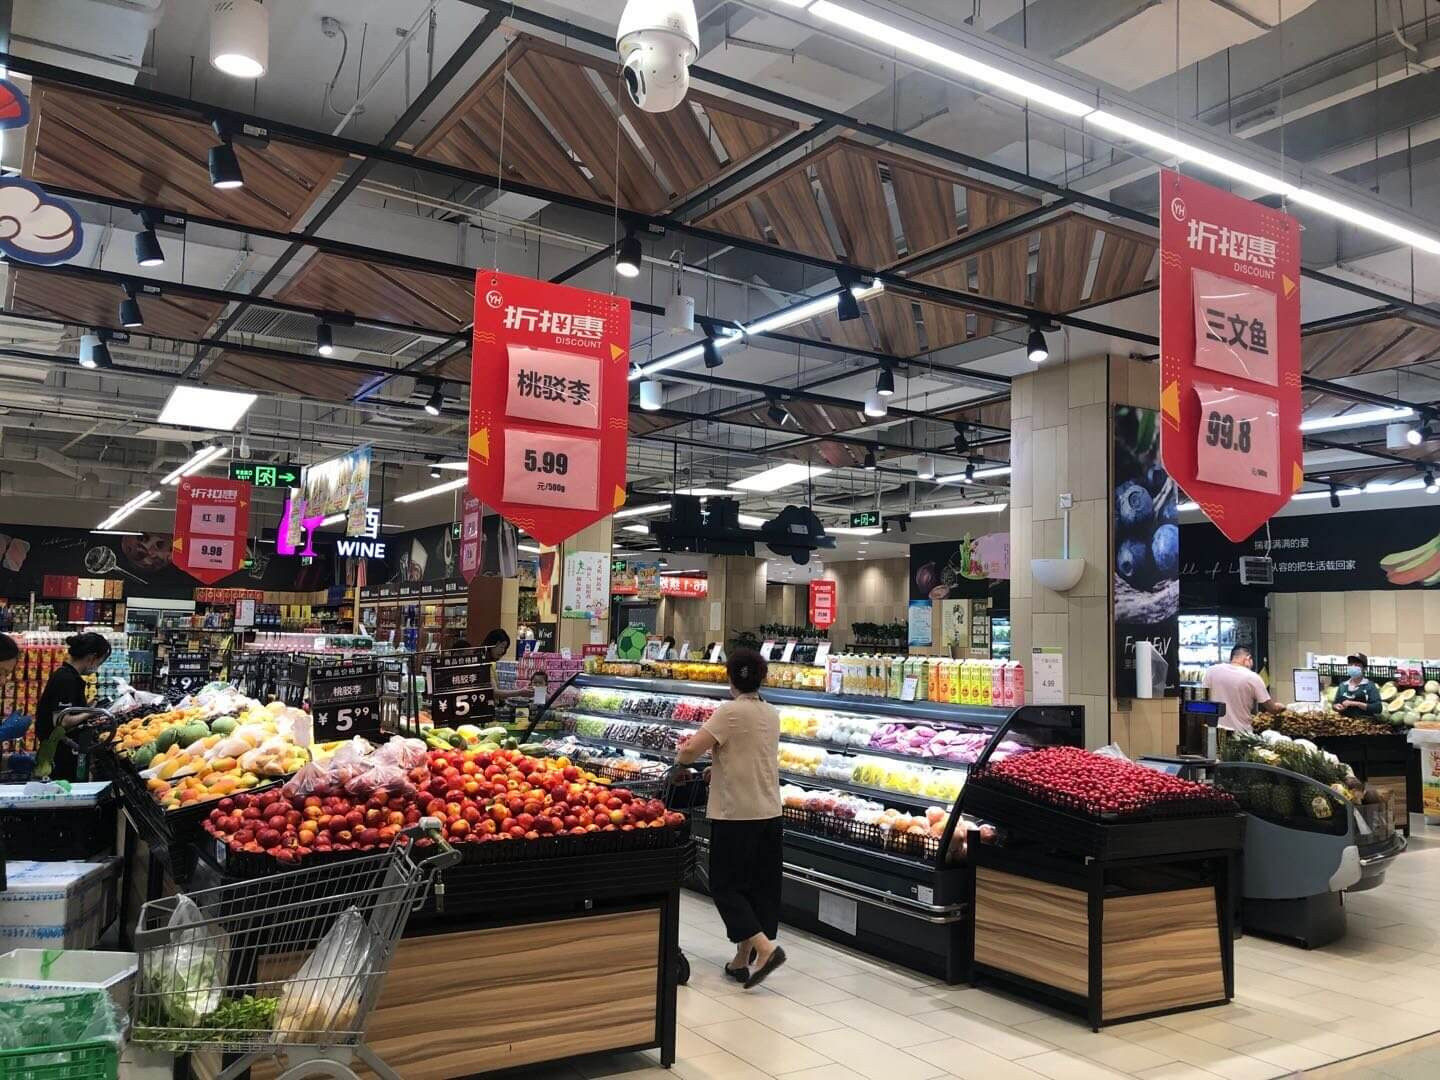 Supermarket in Nanjing, June 2020